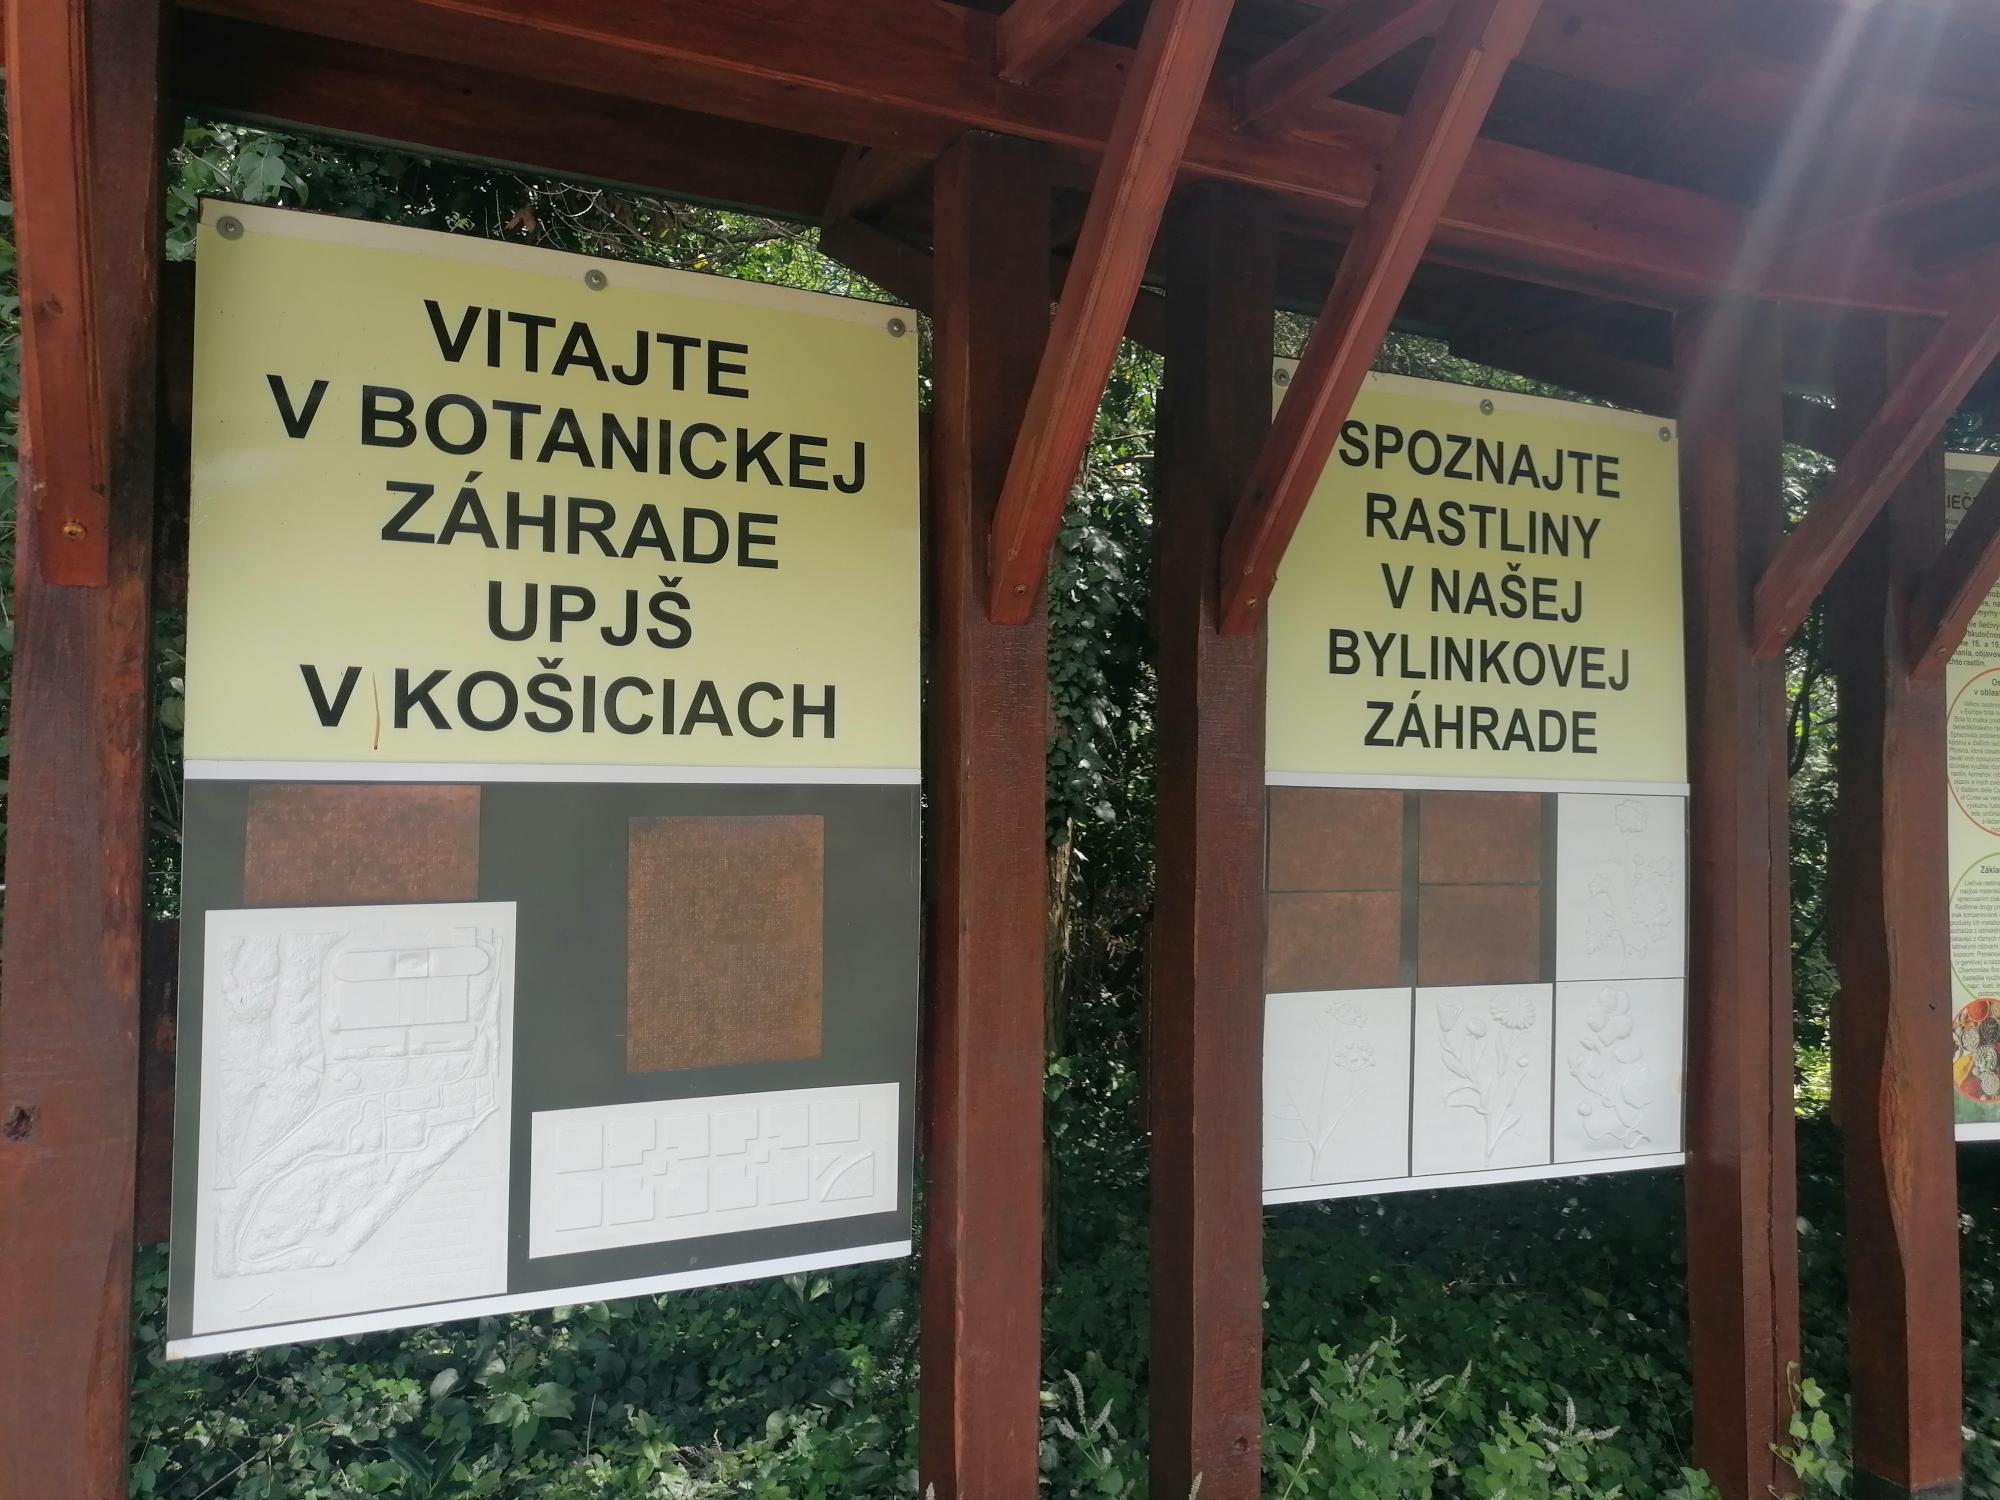 Na obrázku sú dve informačné tabule s nápismi Vitajte v Botanickej záhrade UPJŠ v Košiciach a Spoznajte rastliny v našej bylinkovej záhrade. Na tabuliach sú umiestnené aj reliéfne mapky a text v braili.  